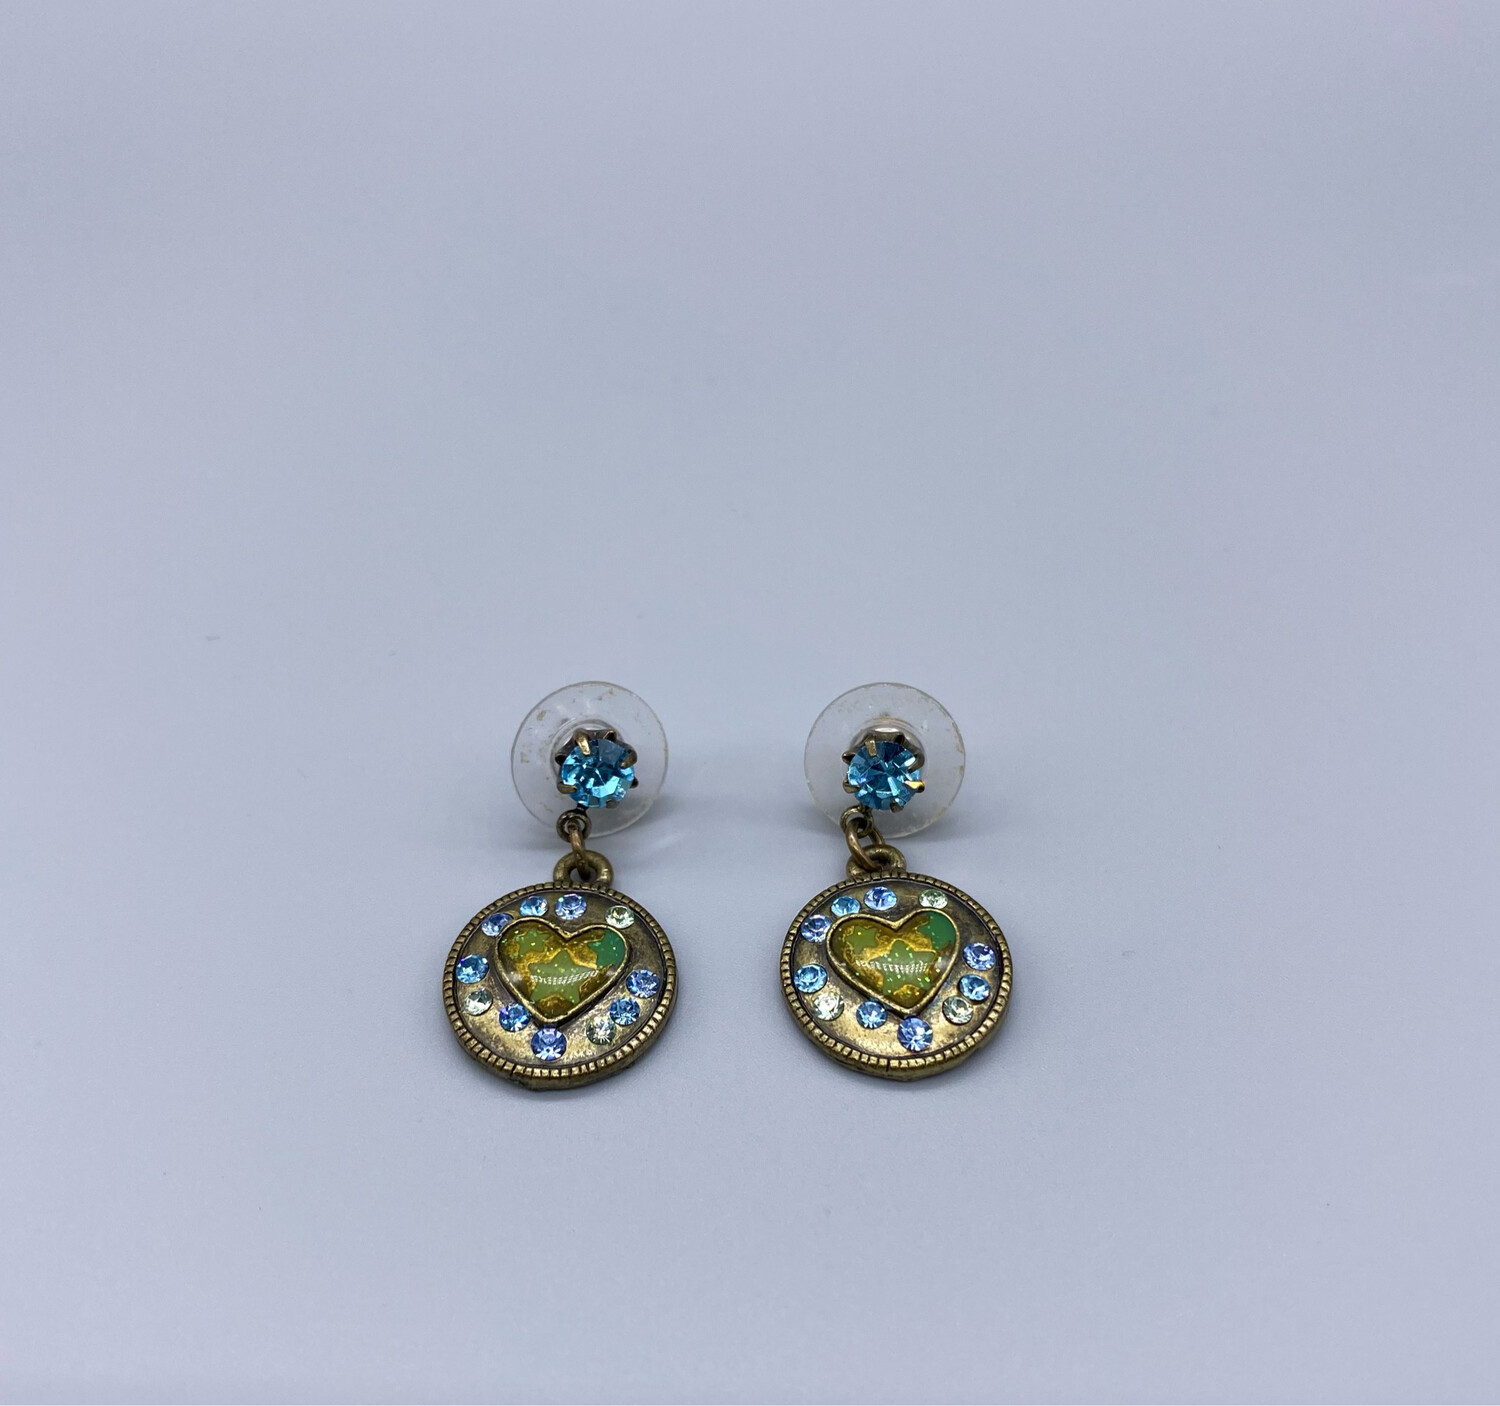 Vintage Heart Emblem Earrings with Blue Gemstones